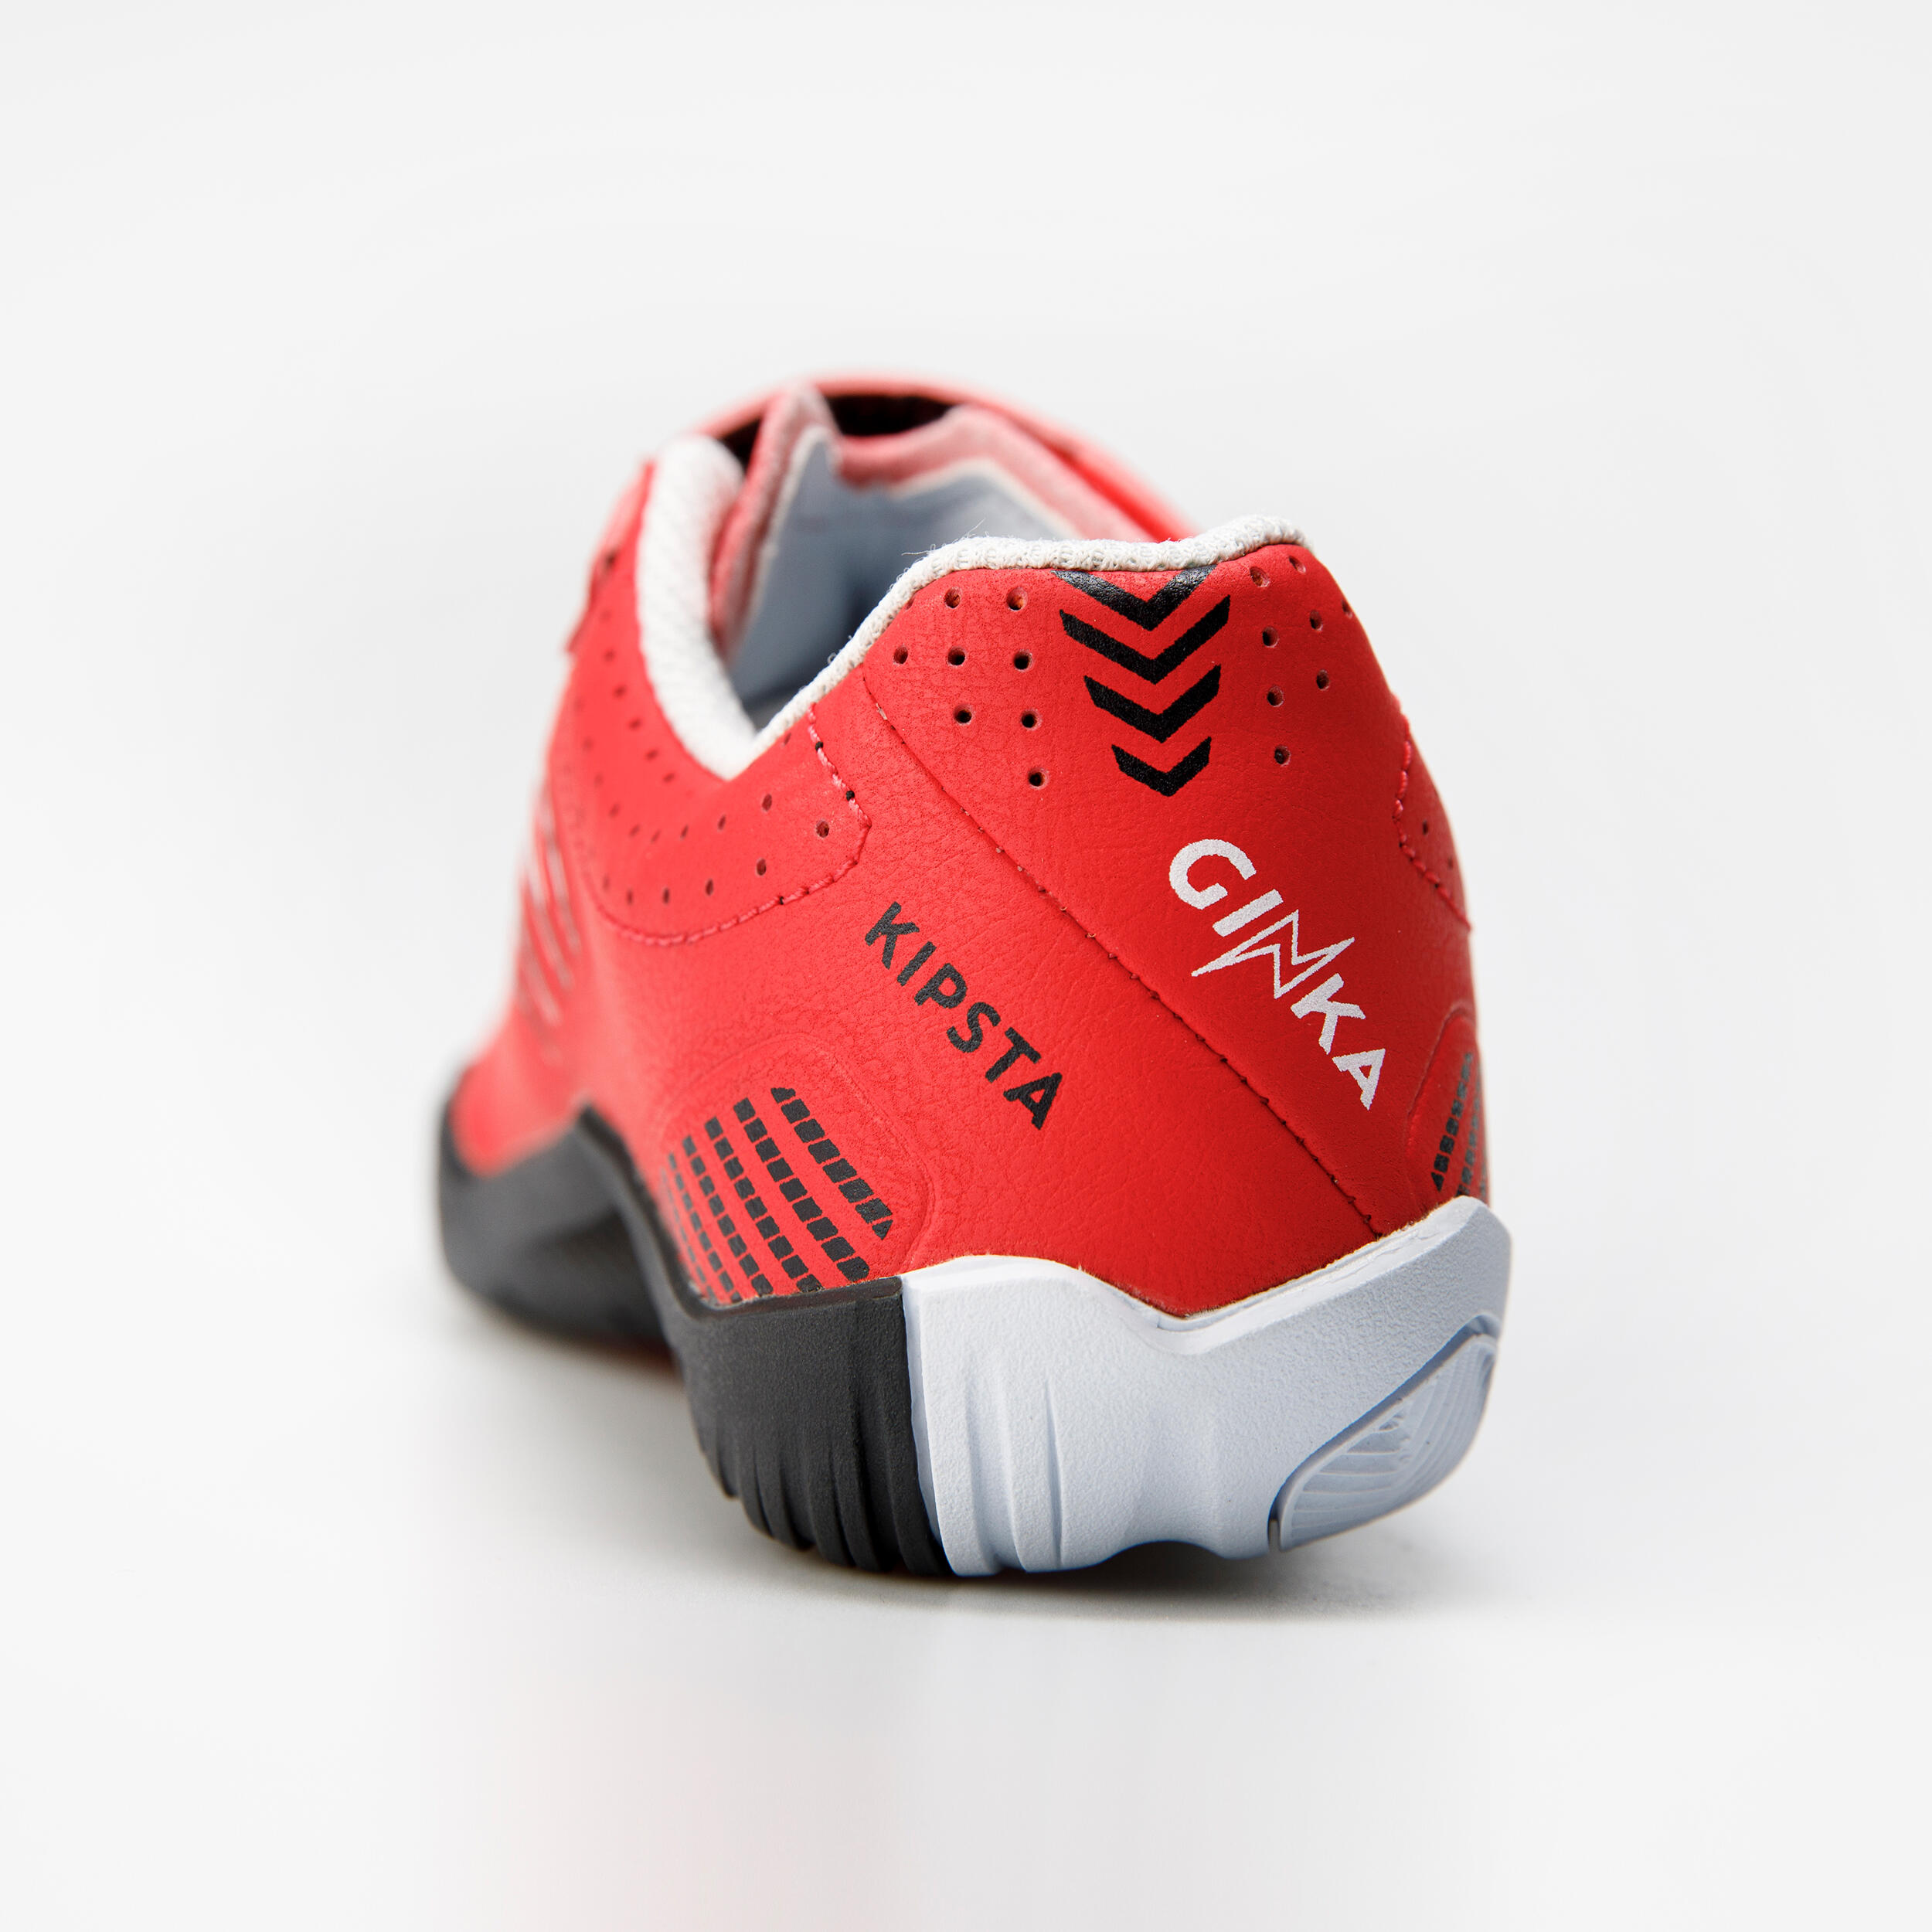 Kids'  Indoor Soccer Shoes - Ginka 500 Red/Black - KIPSTA